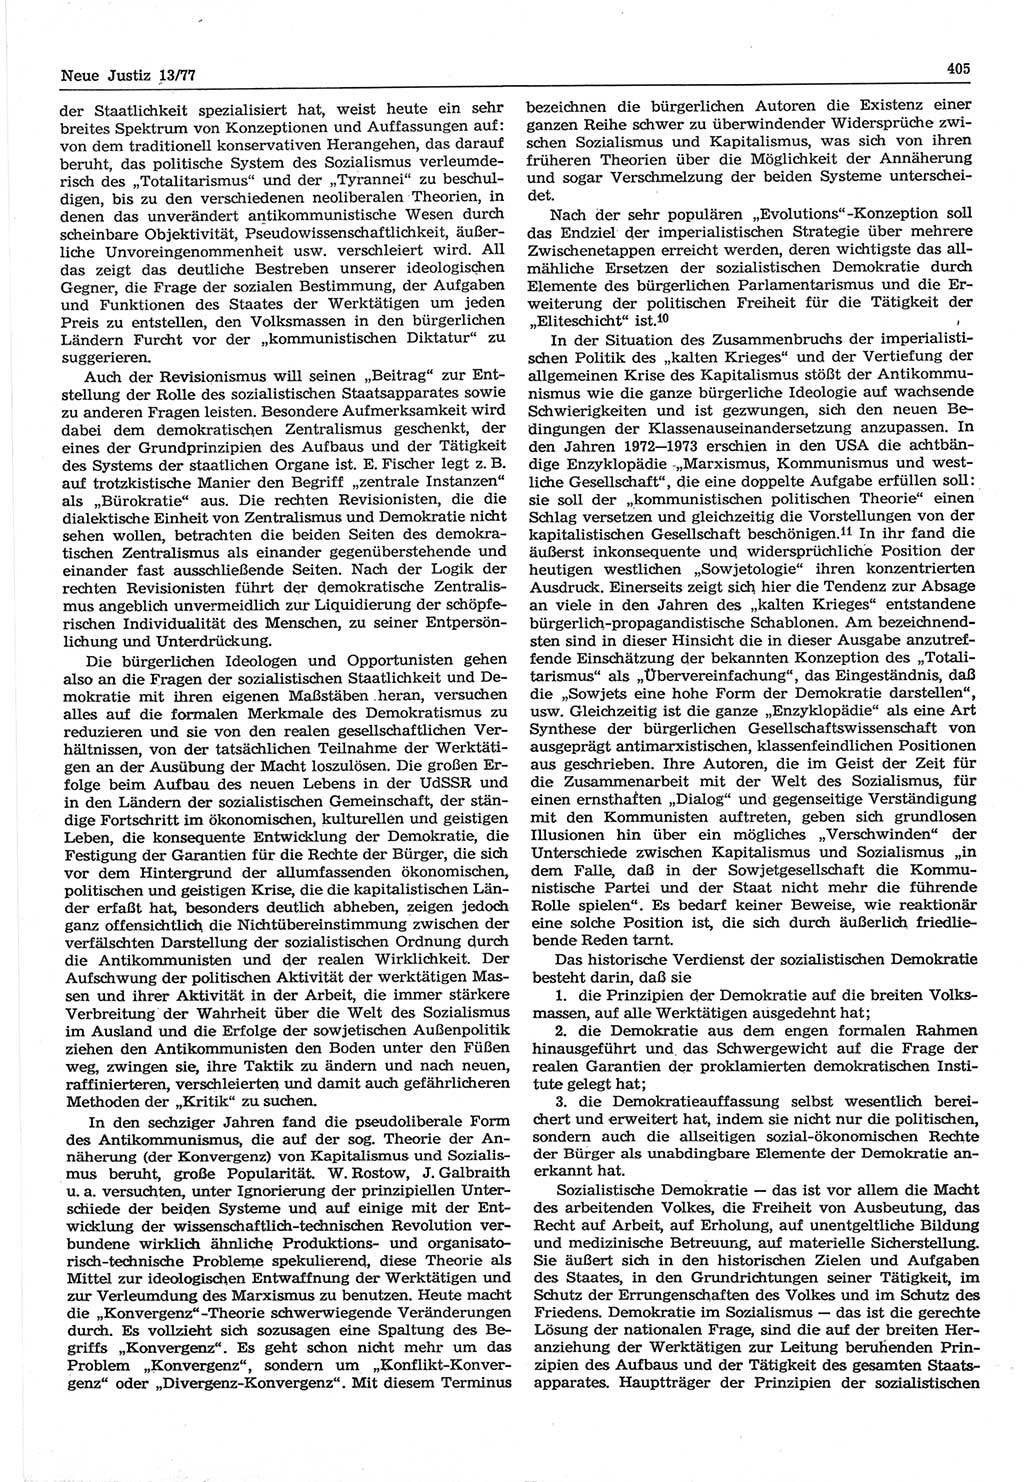 Neue Justiz (NJ), Zeitschrift für Recht und Rechtswissenschaft-Zeitschrift, sozialistisches Recht und Gesetzlichkeit, 31. Jahrgang 1977, Seite 405 (NJ DDR 1977, S. 405)